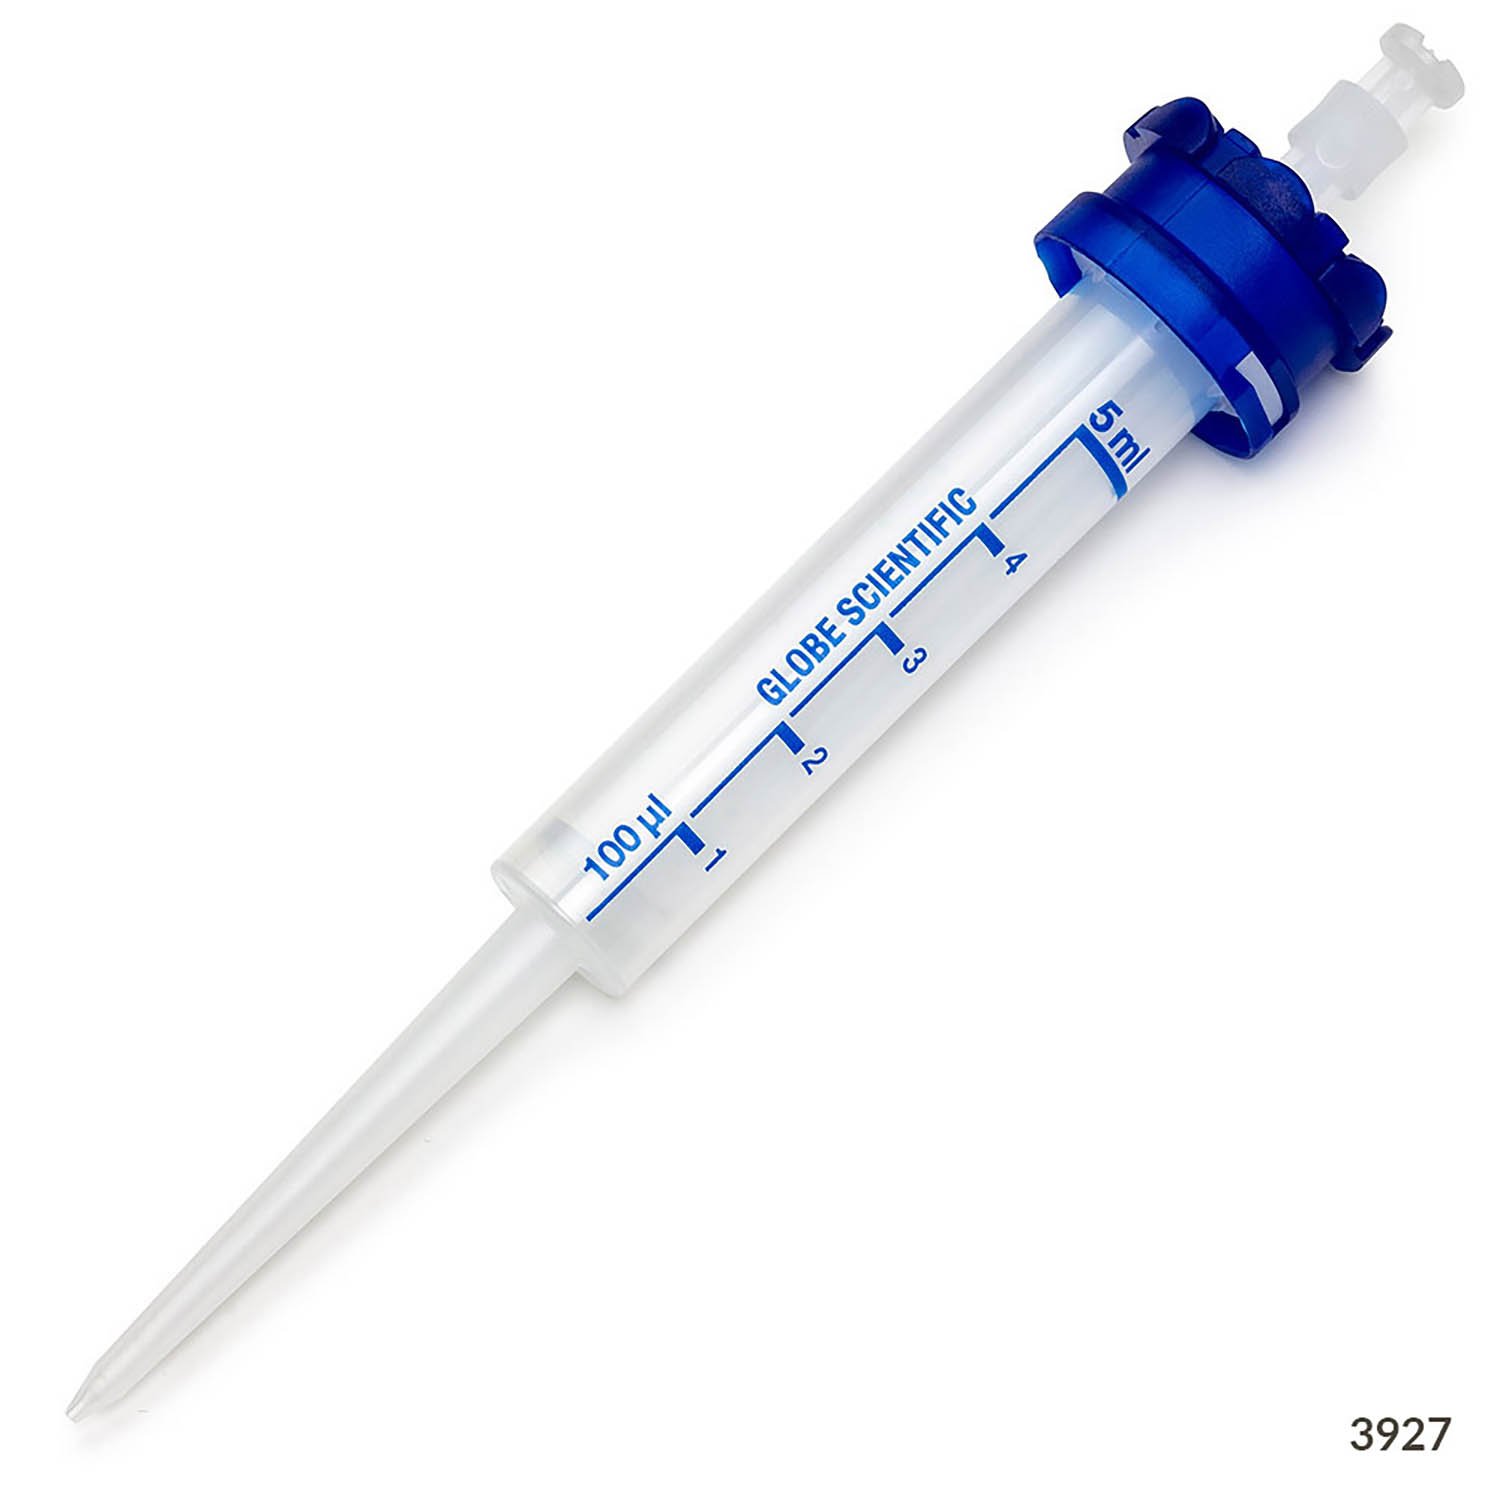 RV-Pette PRO Dispenser Syringe Tip for Repeat Volume Pipettors - Non-Sterile, 5mL, Box of 100